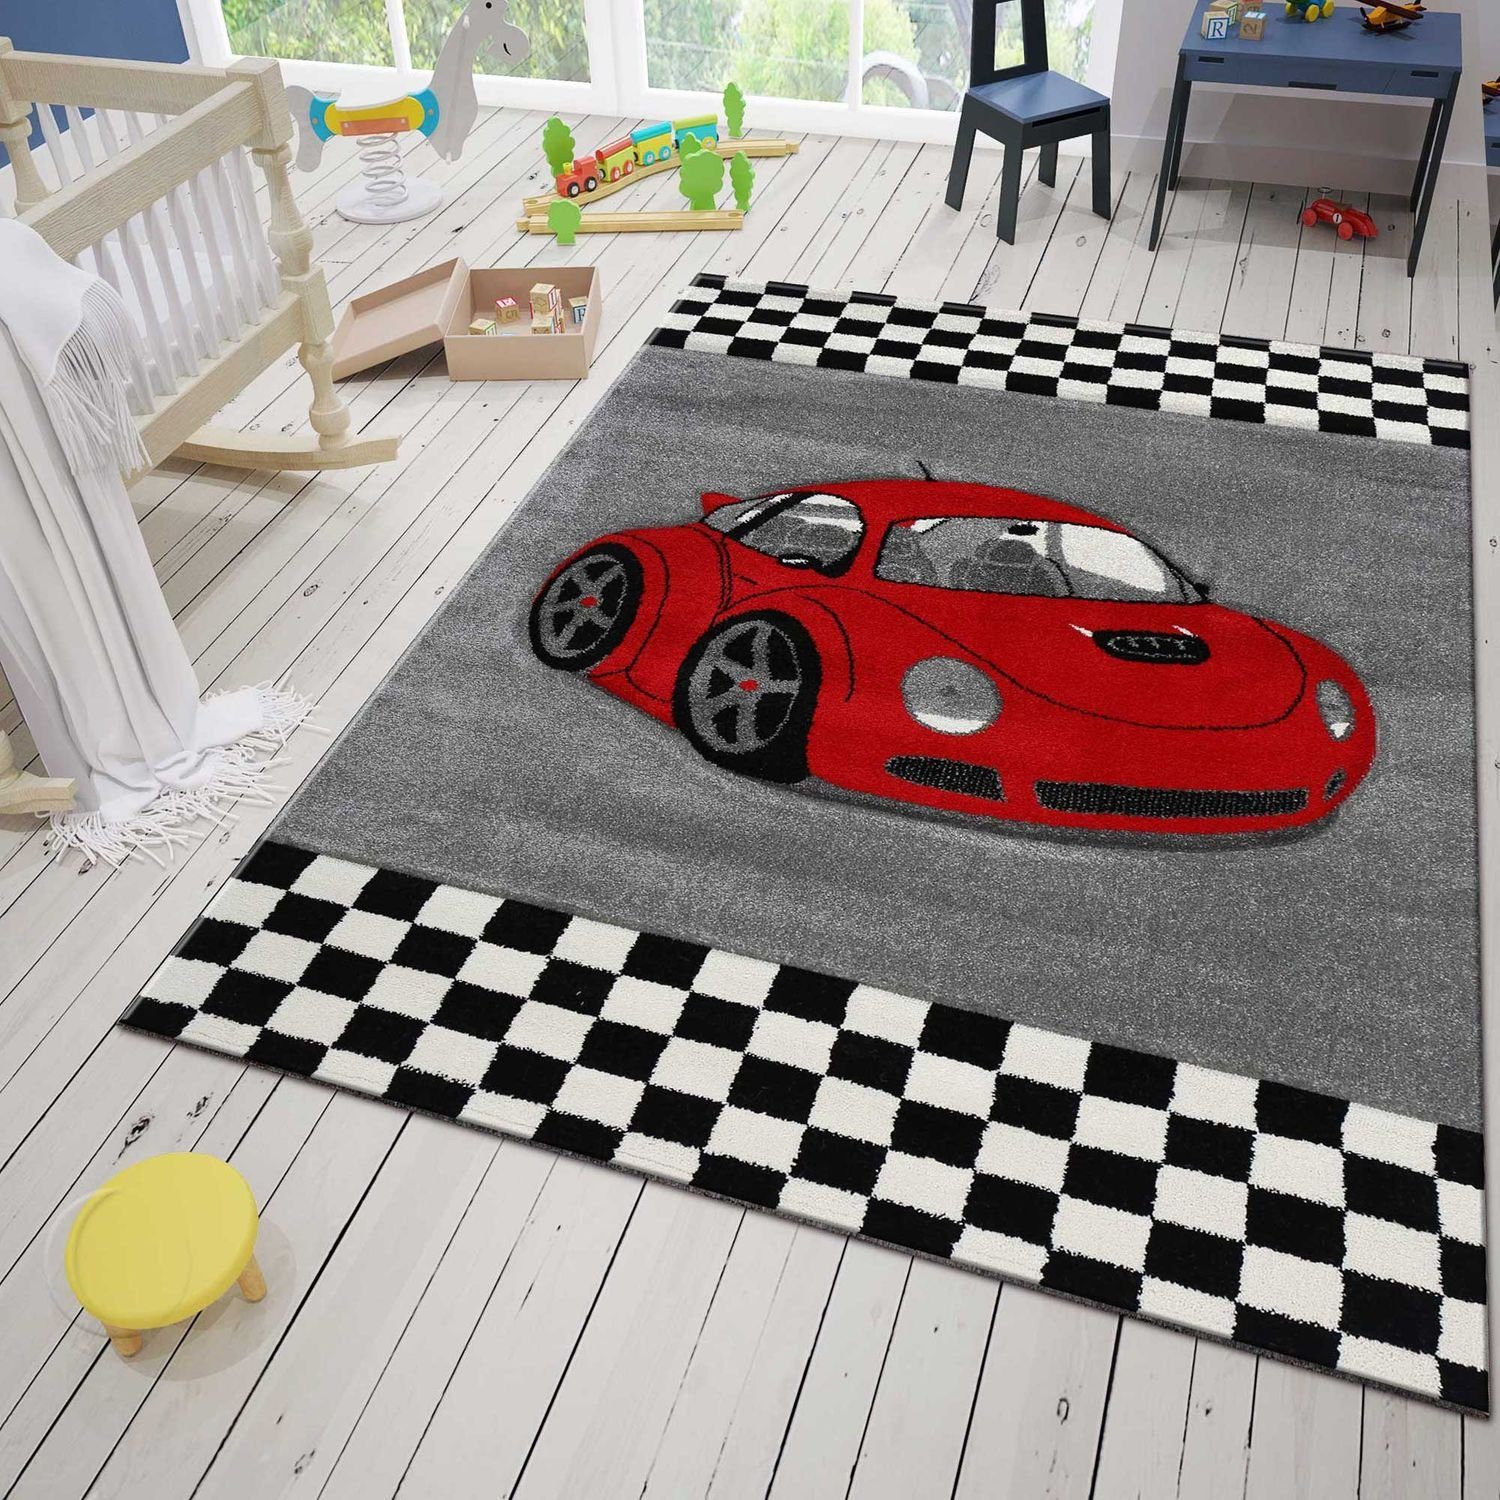 Kinder Teppich Car Auto Rennwagen Frise Moderner verschieden Maße NEU OVP carpet 